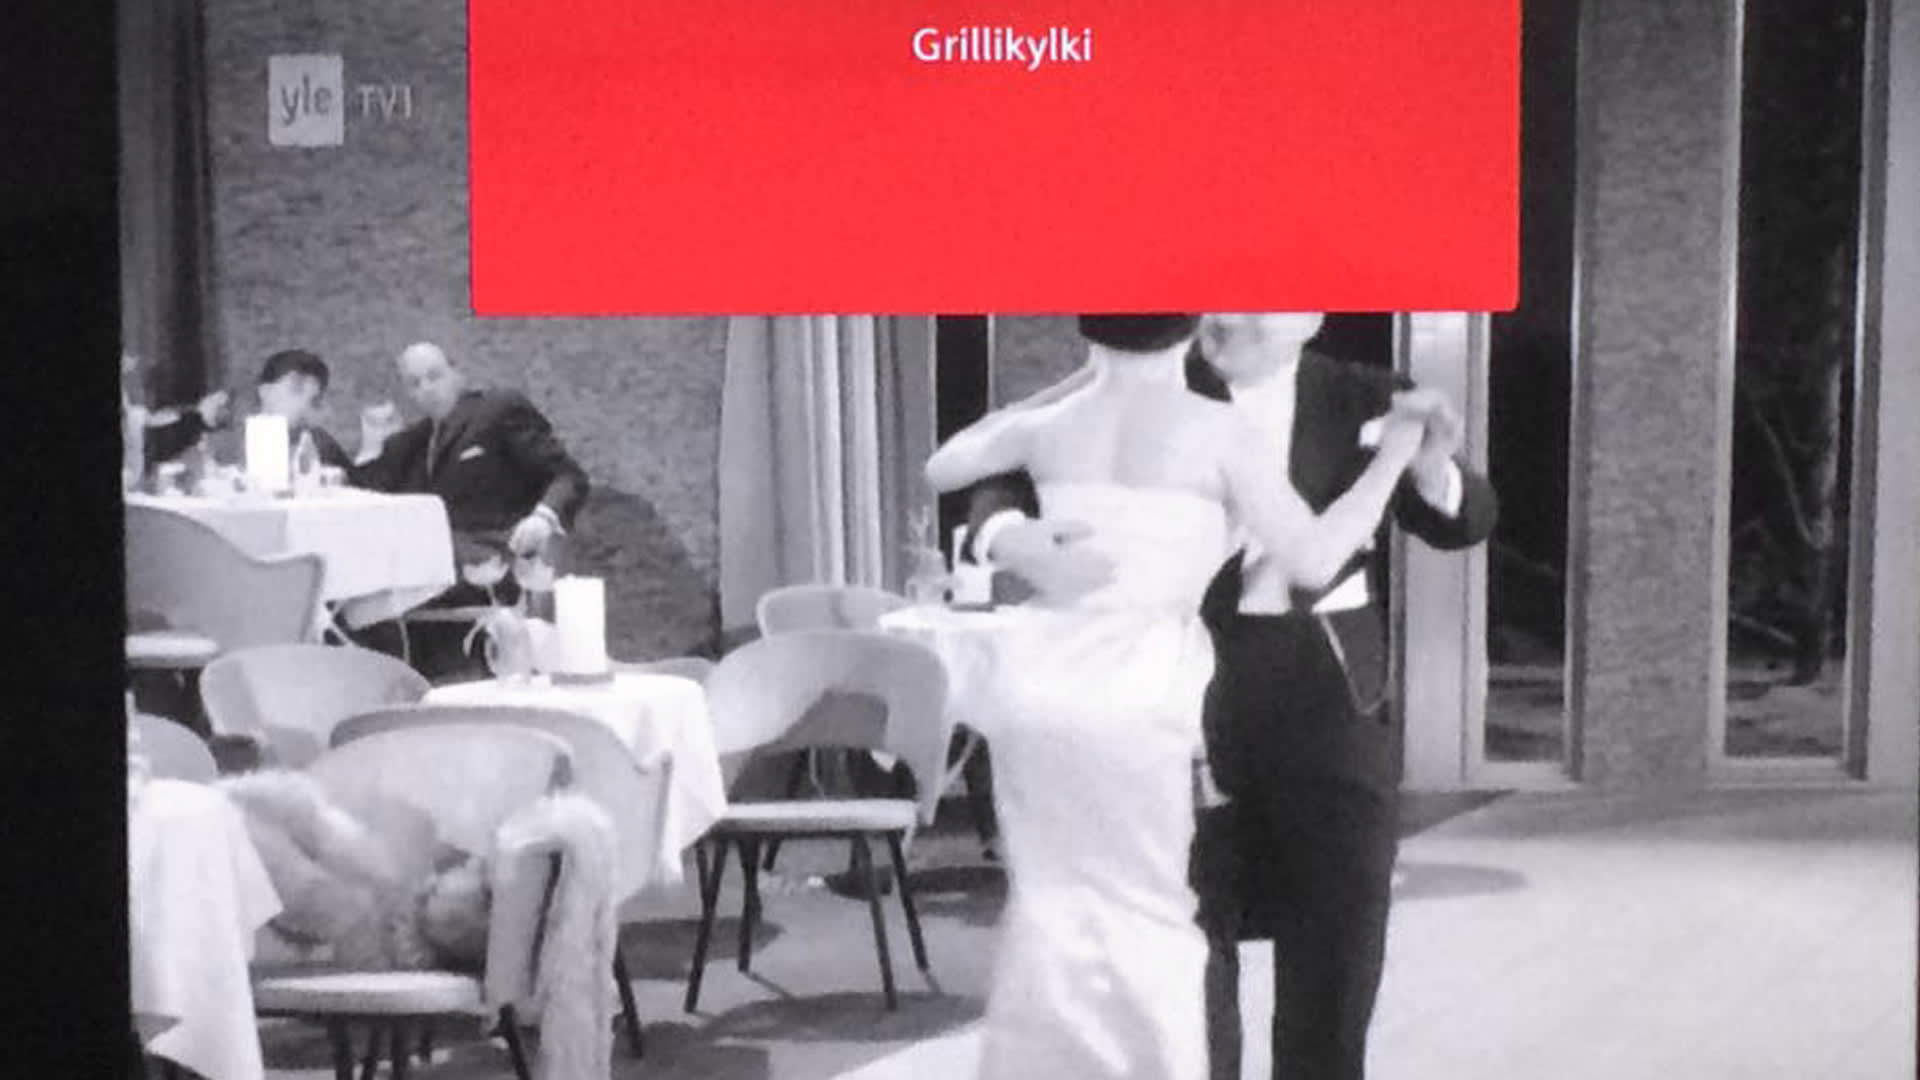 Tv-kuva, jossa näkyy teksti "grillikylki" sekä kuvassa tanssijoita. 